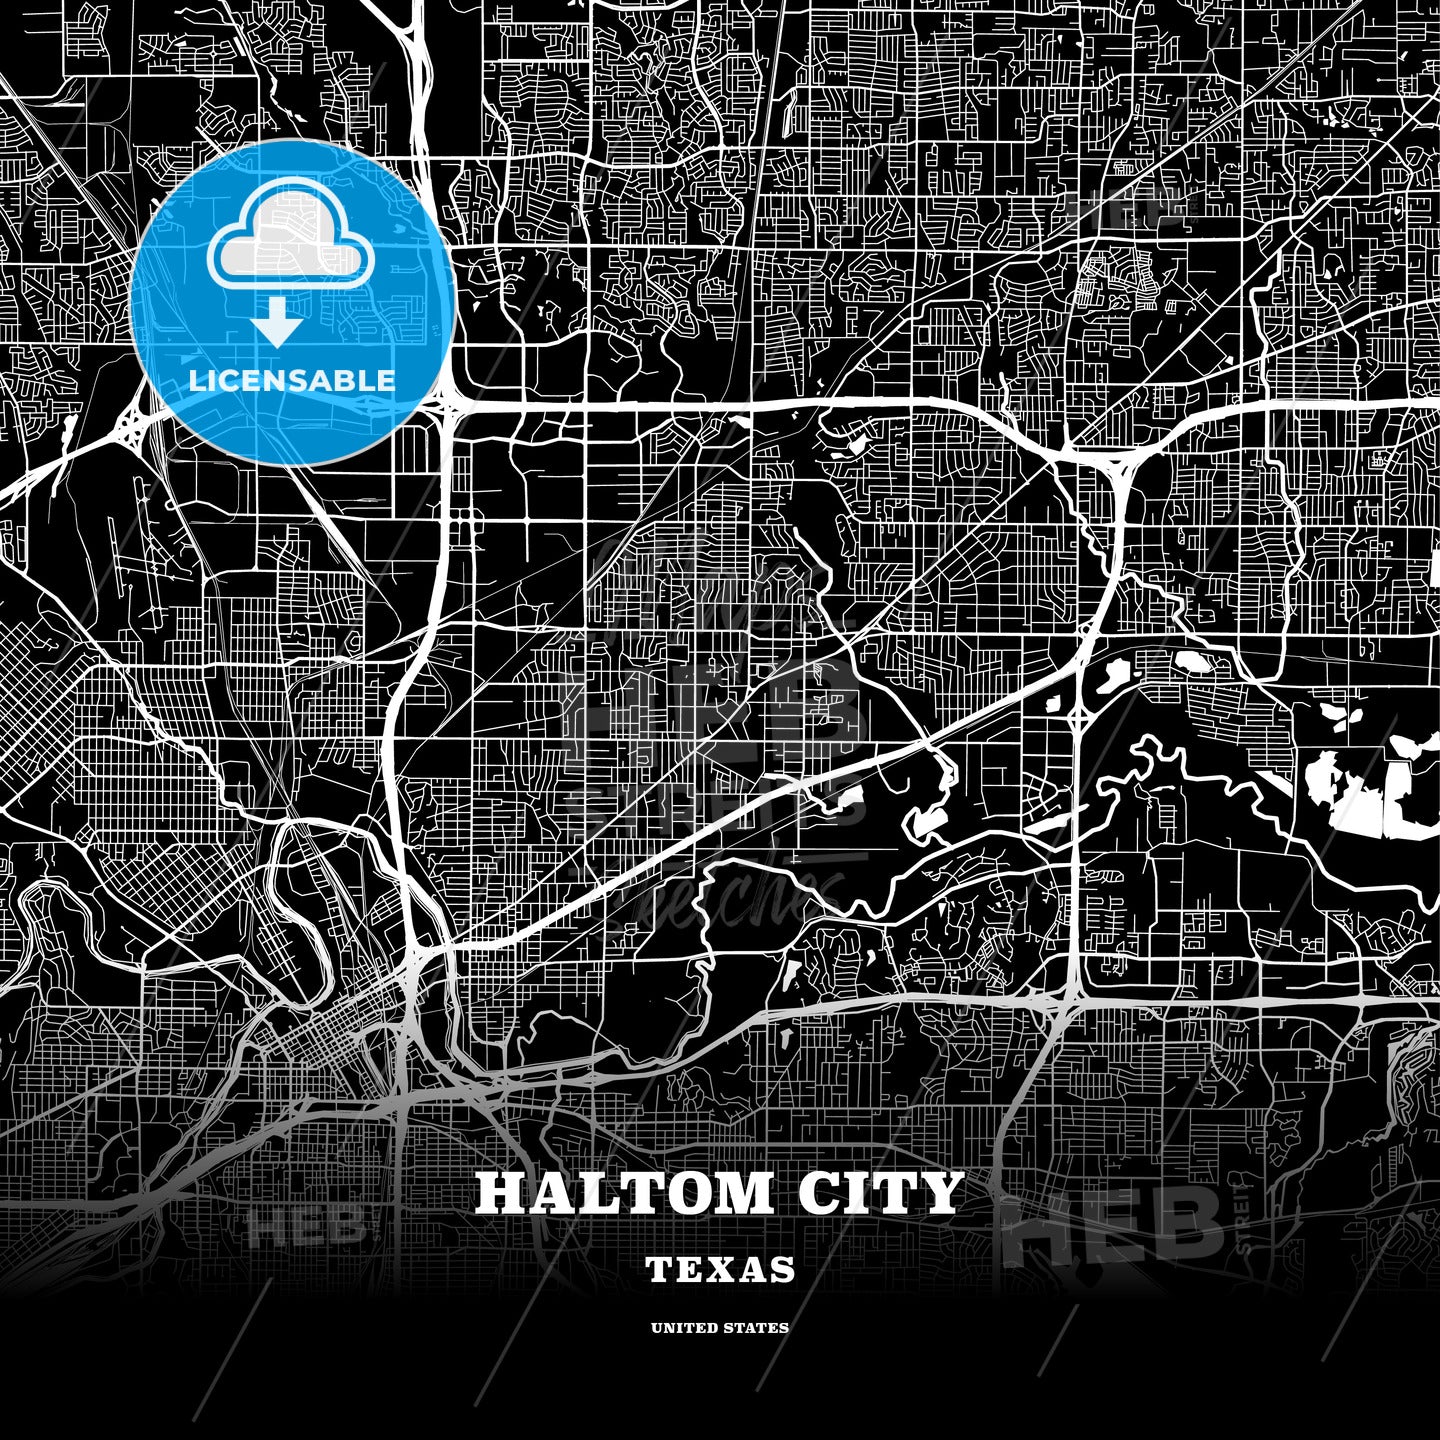 Haltom City, Texas, USA map